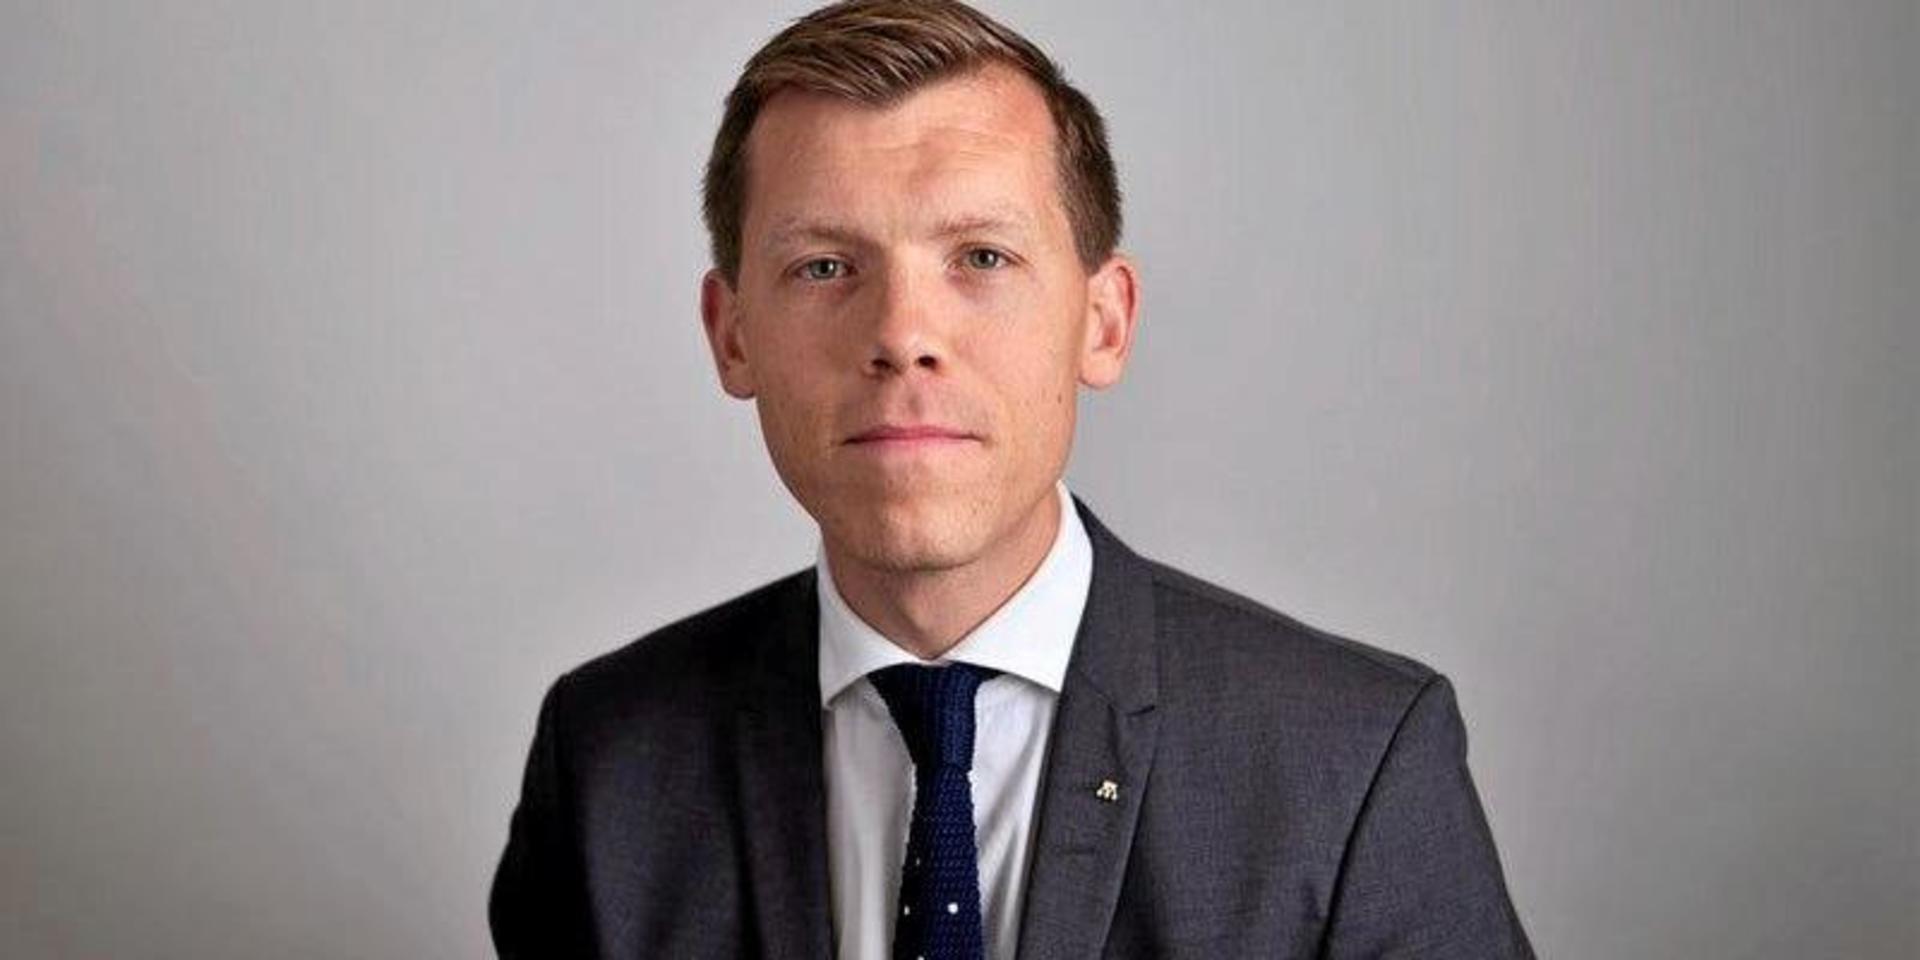 Johan Hultberg (M) riksdagsledamot från Fjällbacka